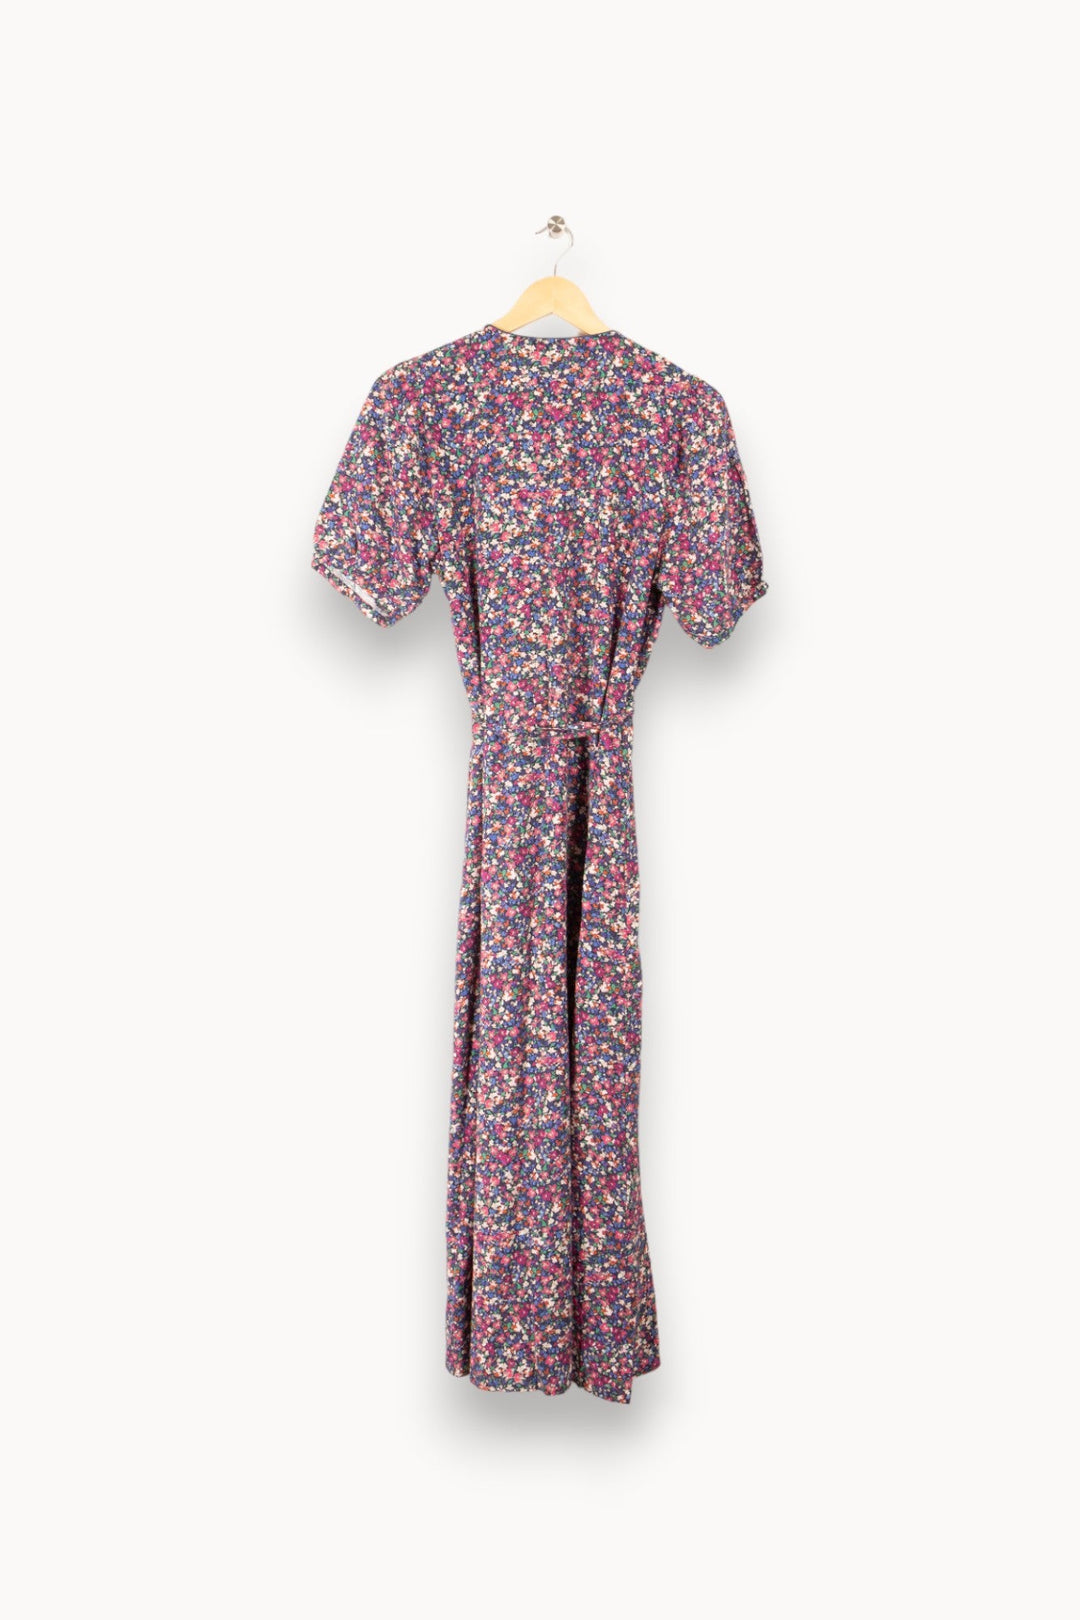 Robe multicolore à motifs de fleurs violettes, bleues et roses - Taille L / 40